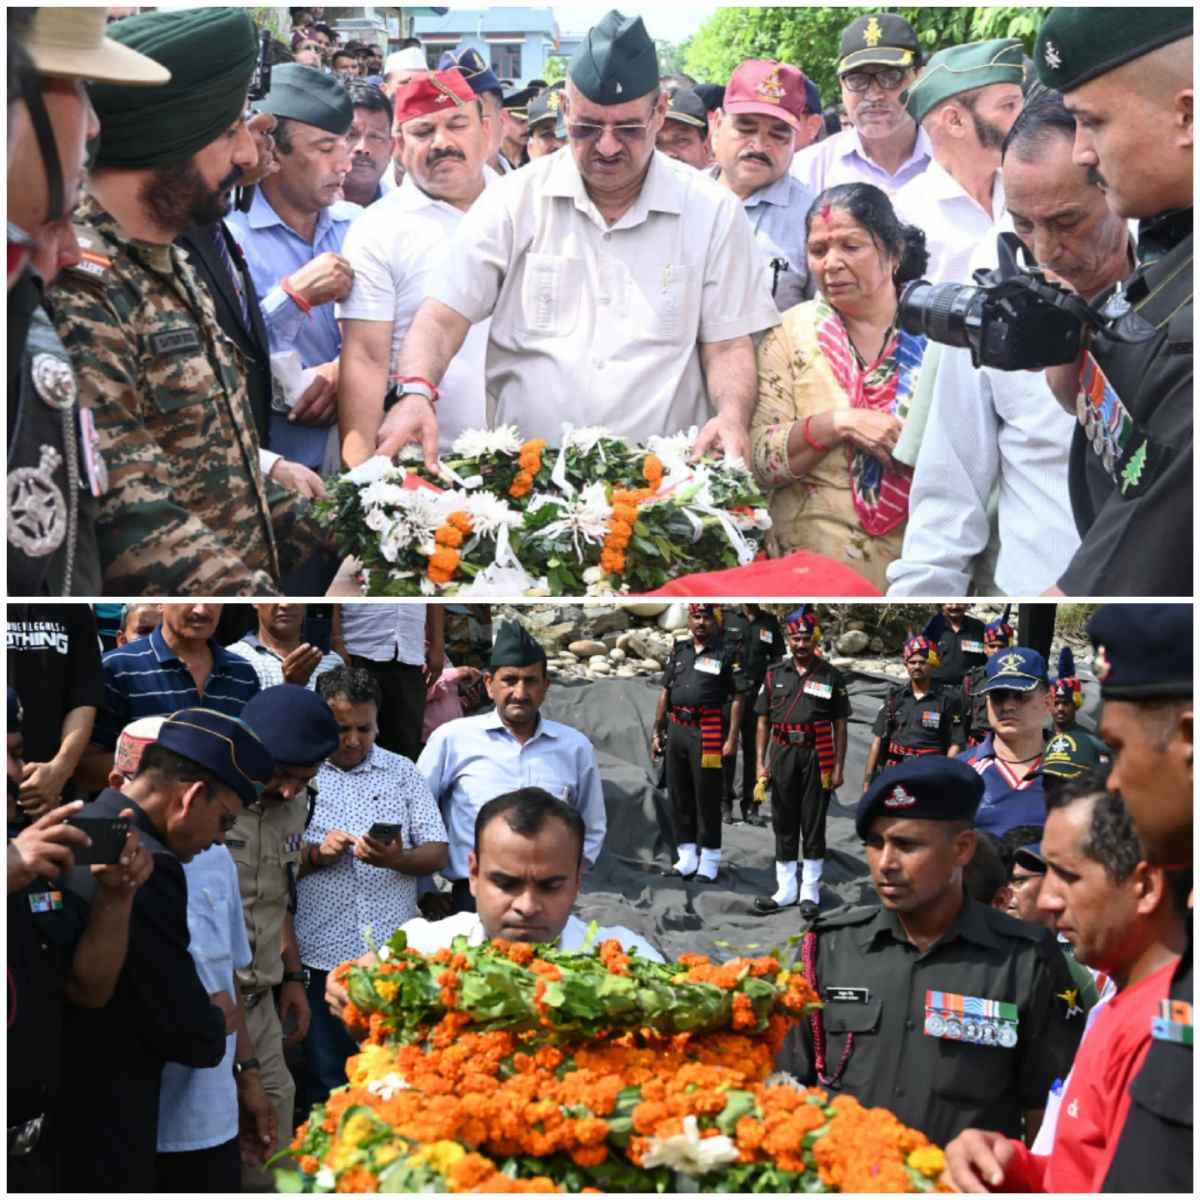 वीर शहीद आदर्श नेगी एवं विनोद सिंह भंडारी को गमगीन माहौल में सैन्य सम्मान के साथ दी गई अंतिम विदाई